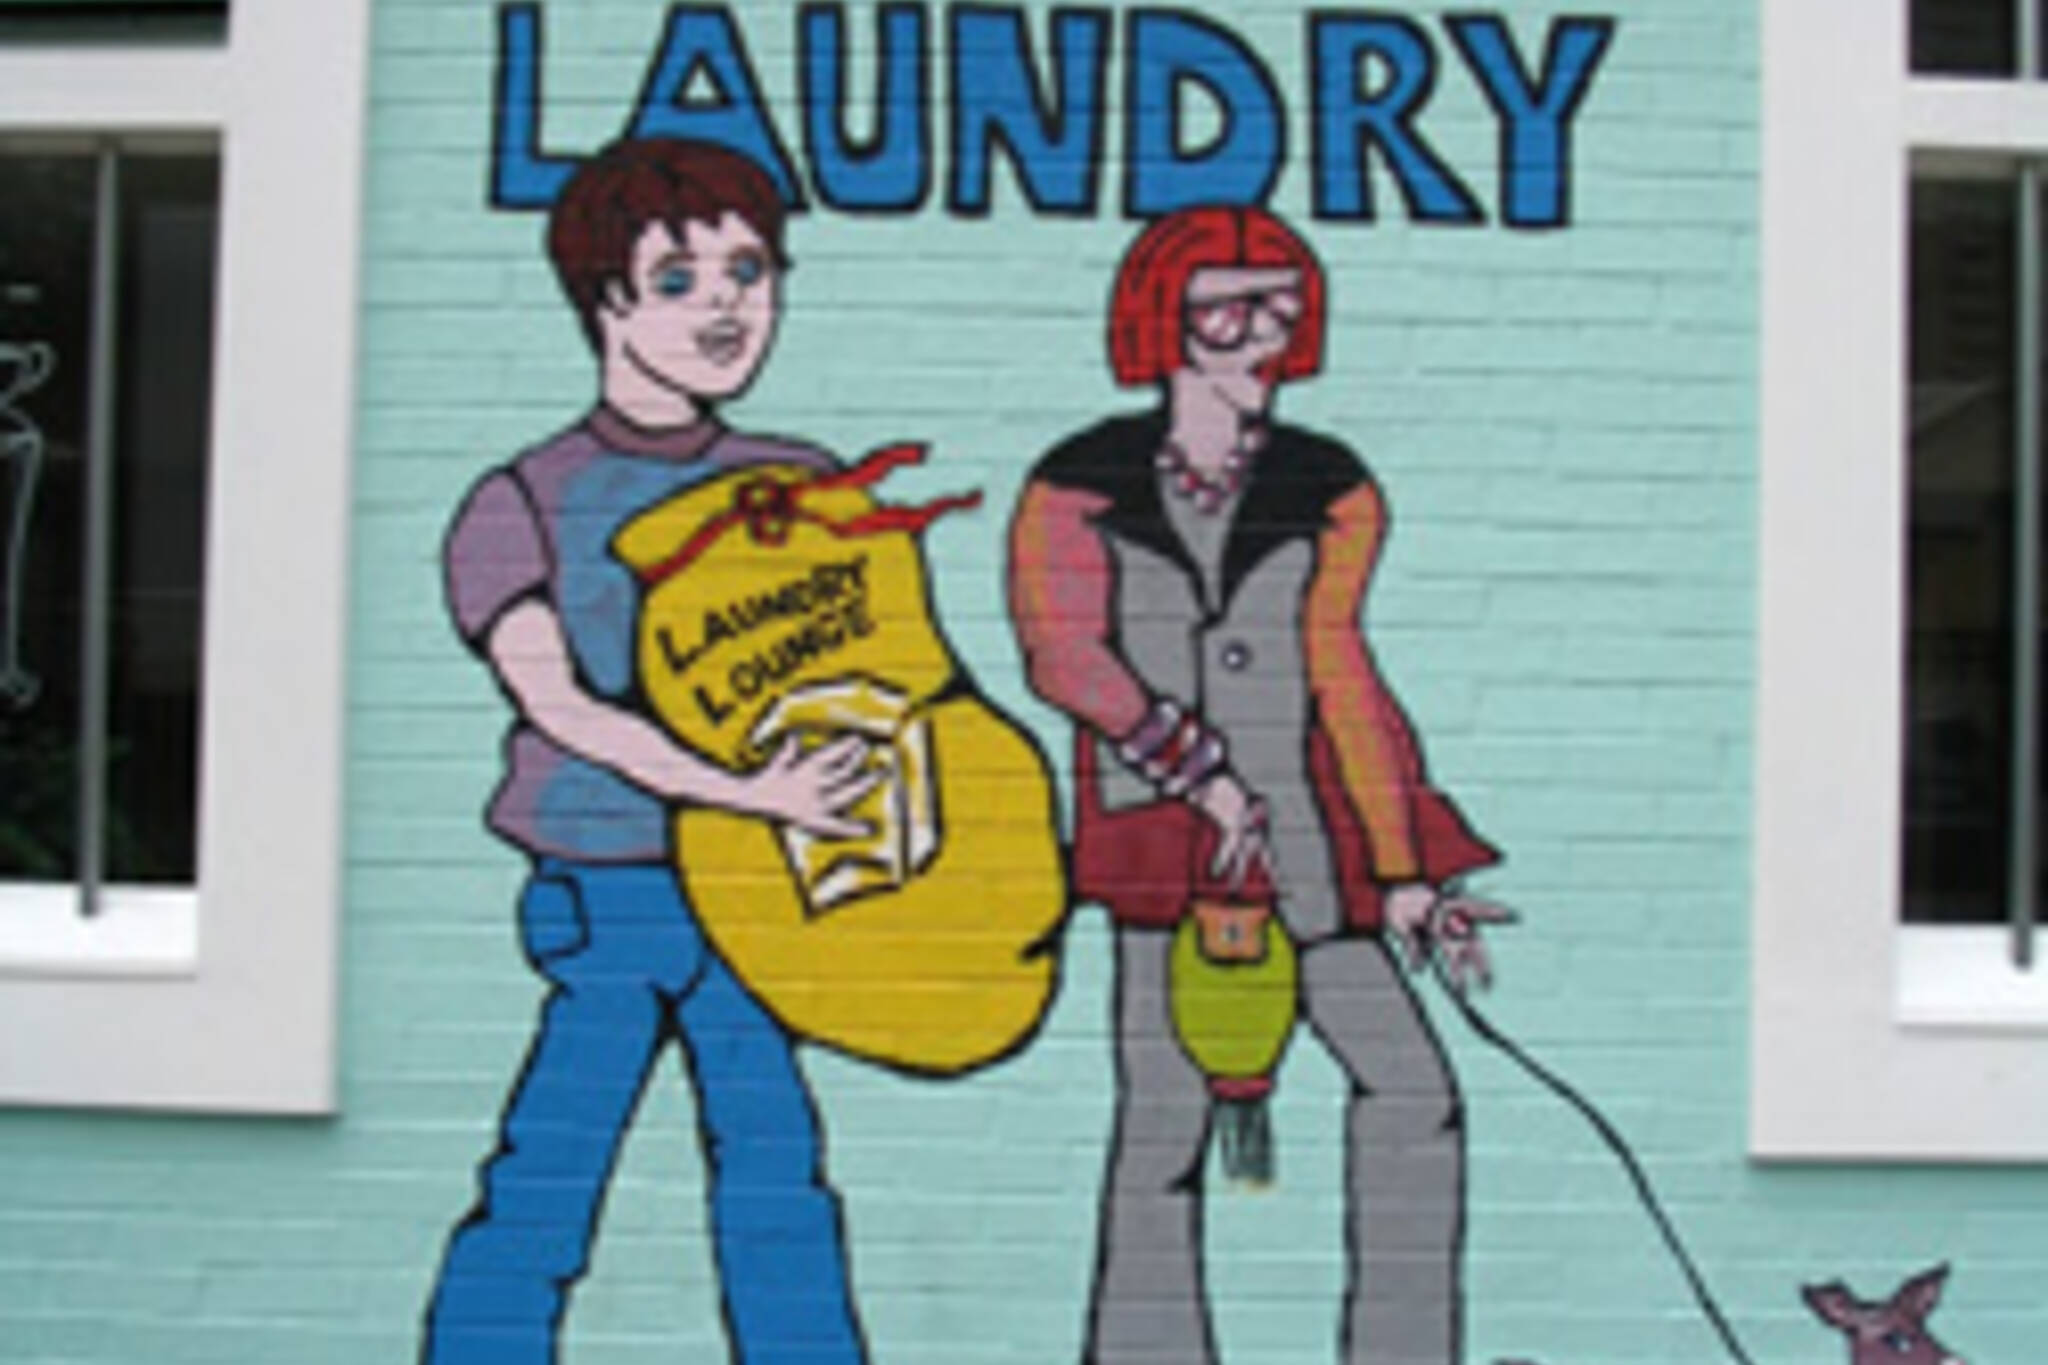 Green Laundry